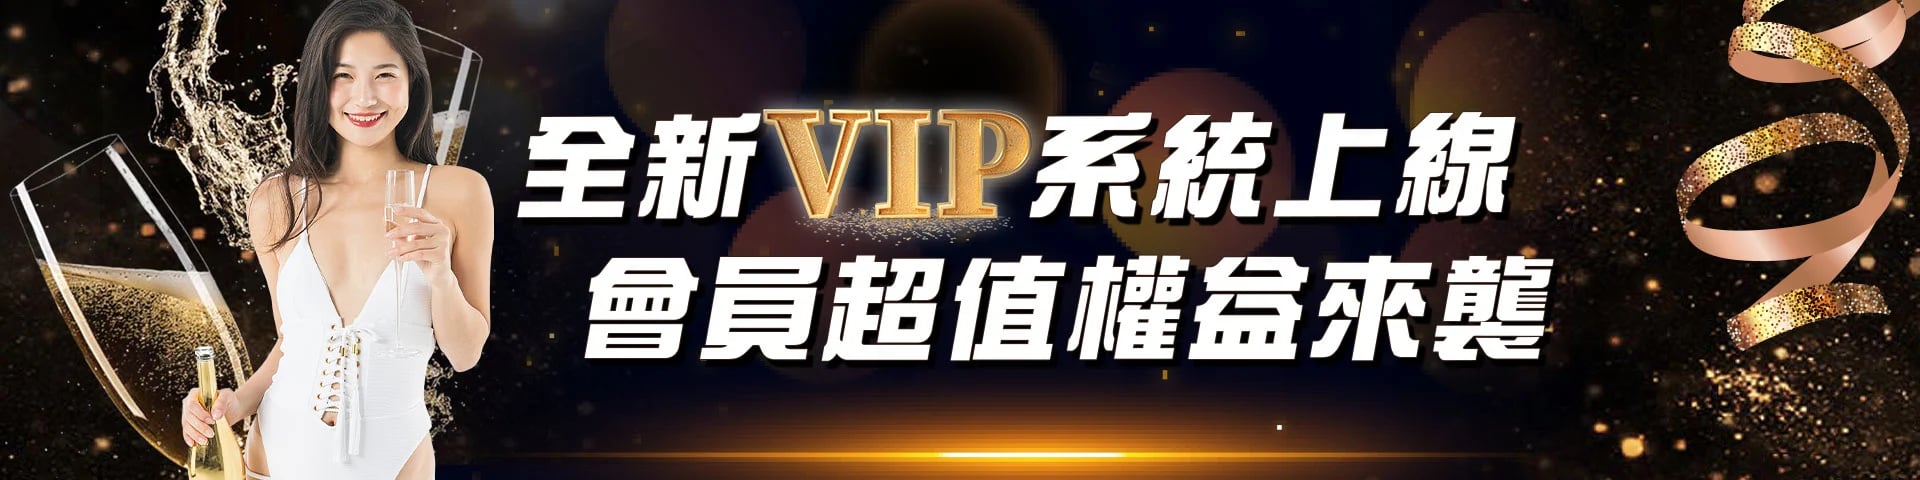 淘金娛樂城-VIP活動